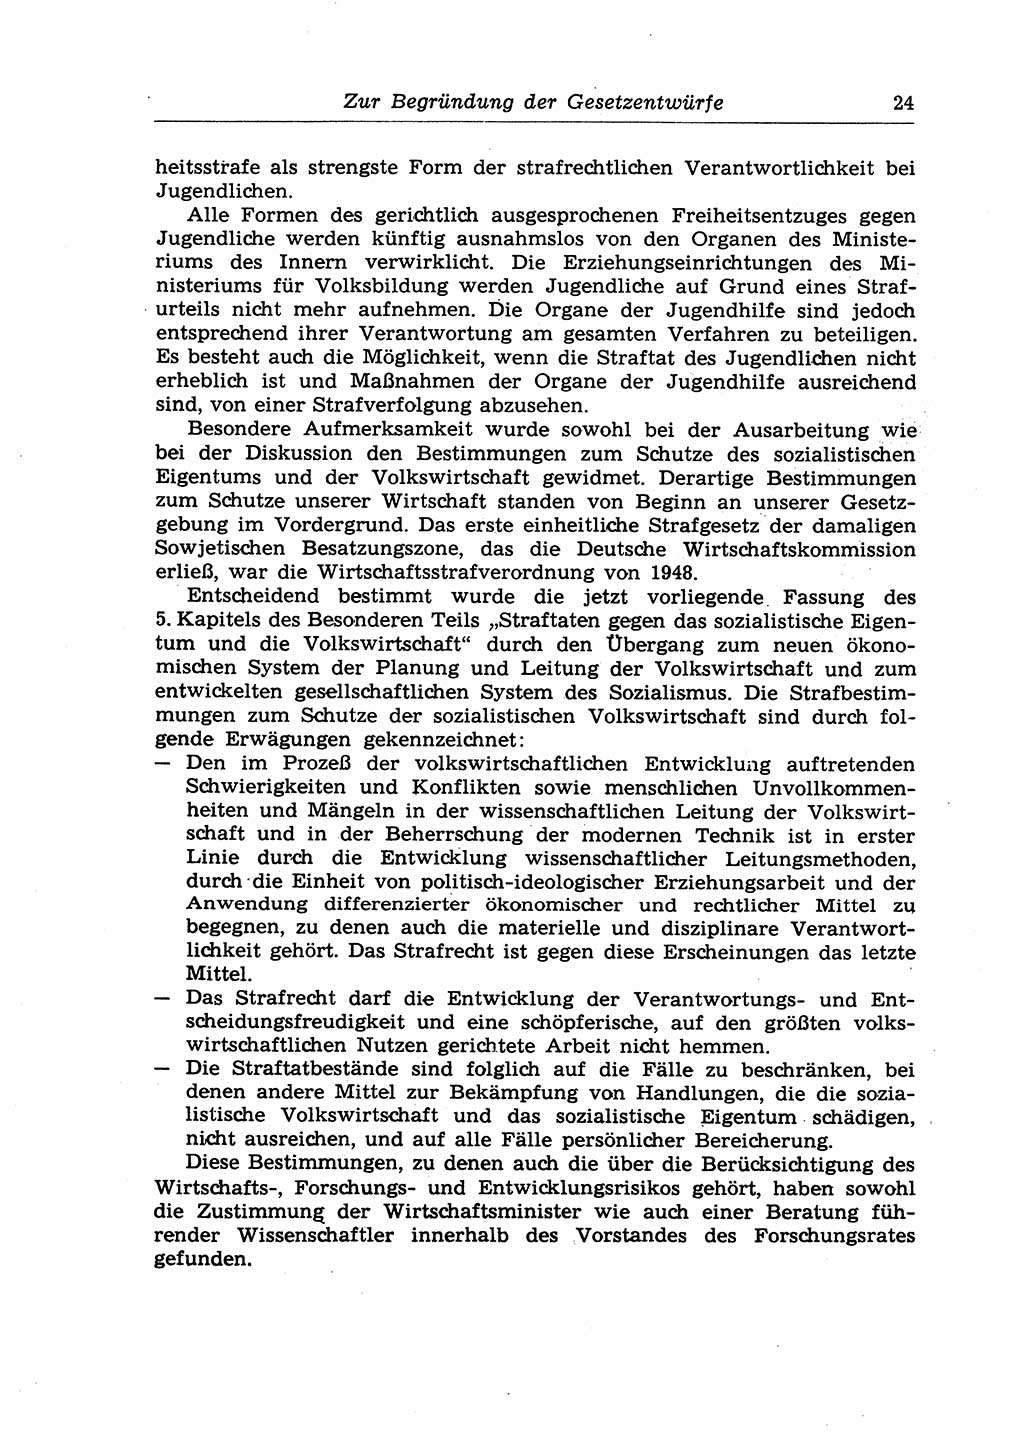 Strafrecht der Deutschen Demokratischen Republik (DDR), Lehrkommentar zum Strafgesetzbuch (StGB), Allgemeiner Teil 1970, Seite 24 (Strafr. DDR Lehrkomm. StGB AT 1970, S. 24)